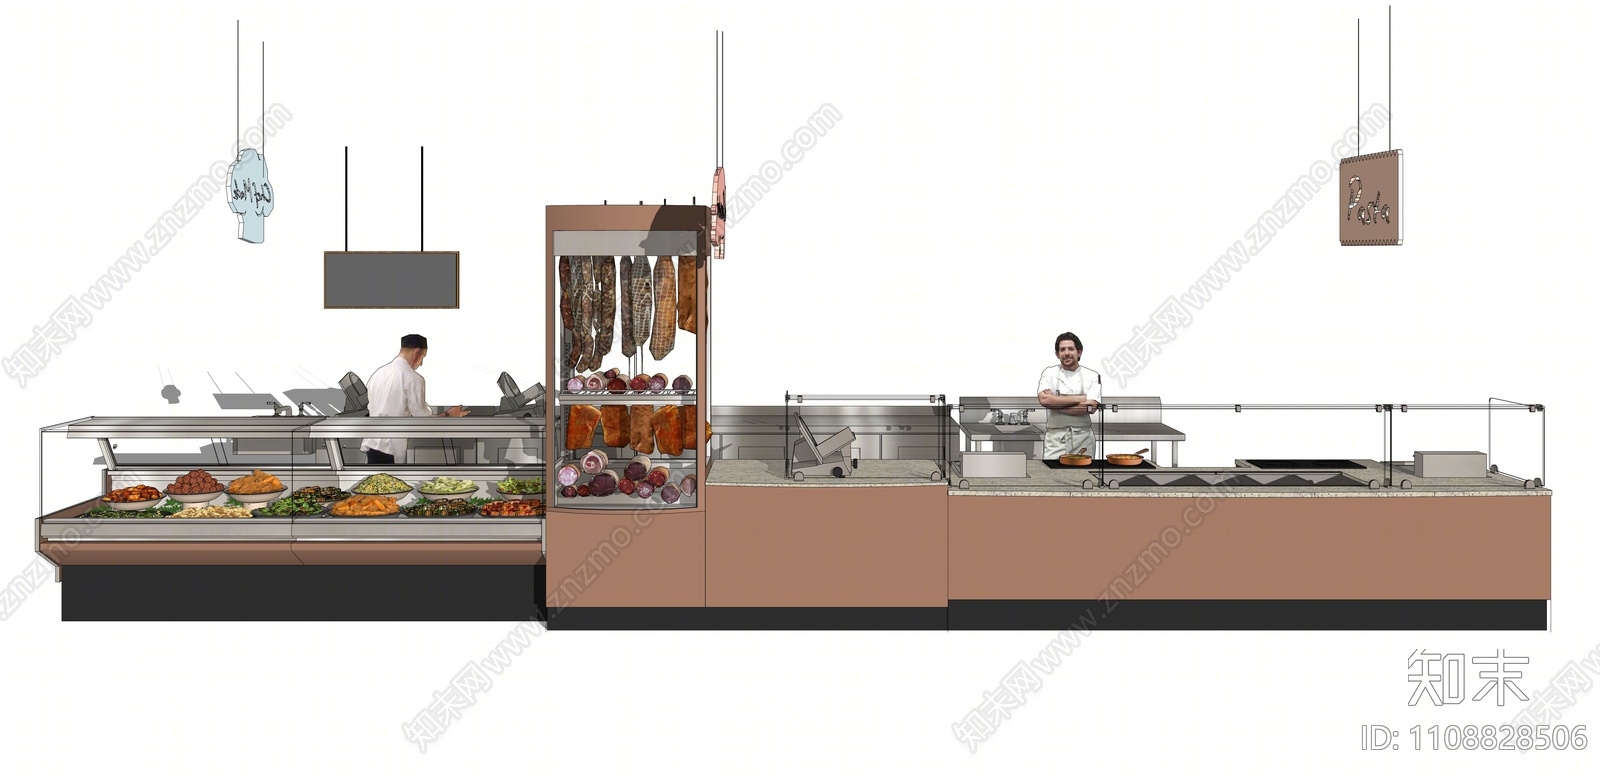 熟食店图纸施工图效果图CAD图纸，餐厅cad设计图纸下载 - 易图网